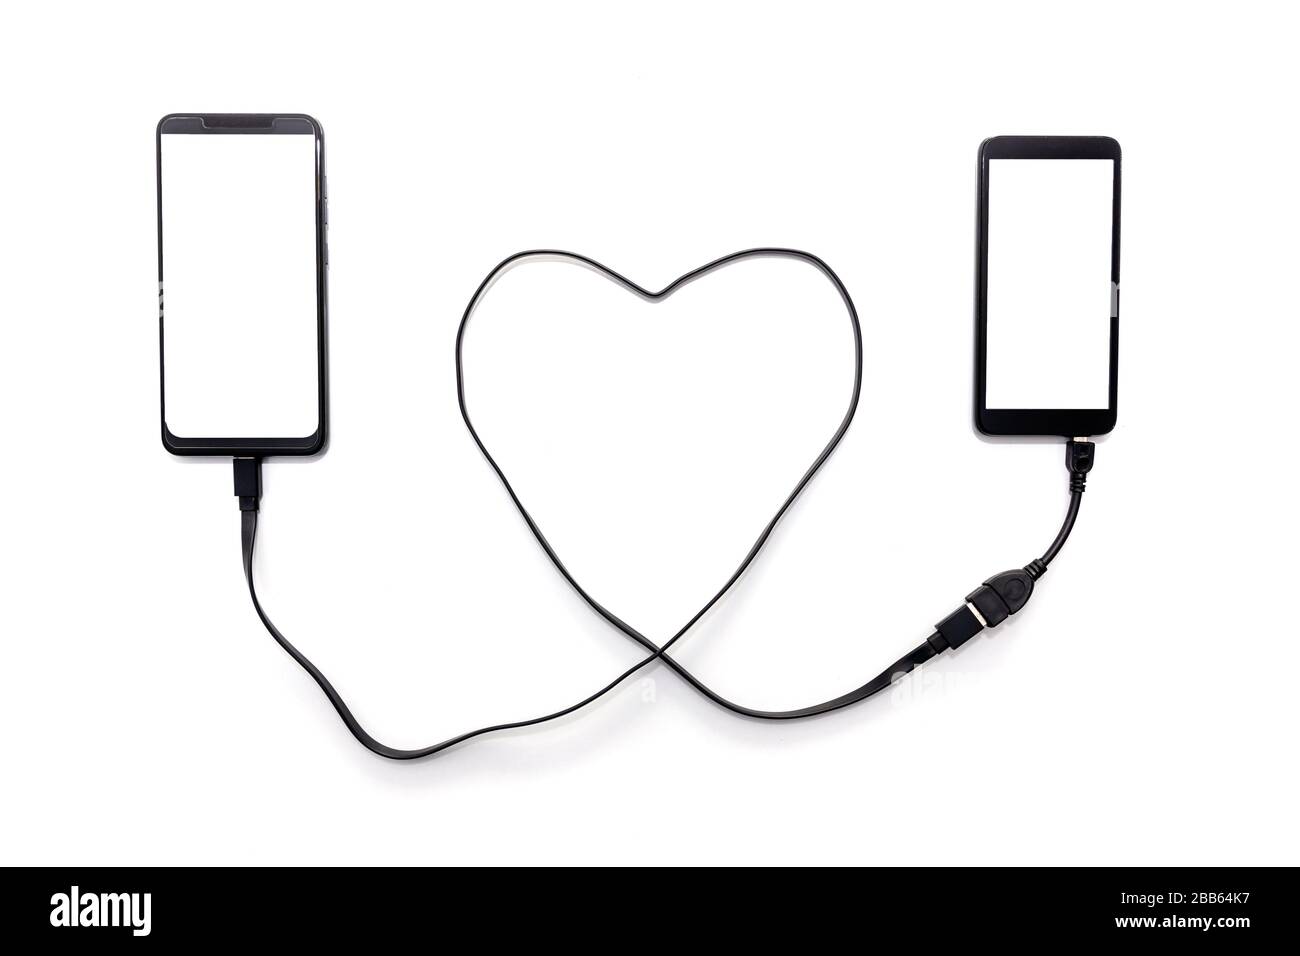 Collegamento manuale di due smartphone con un cavo USB a forma di cuore. Concetto di relazione a lunga distanza. Foto Stock